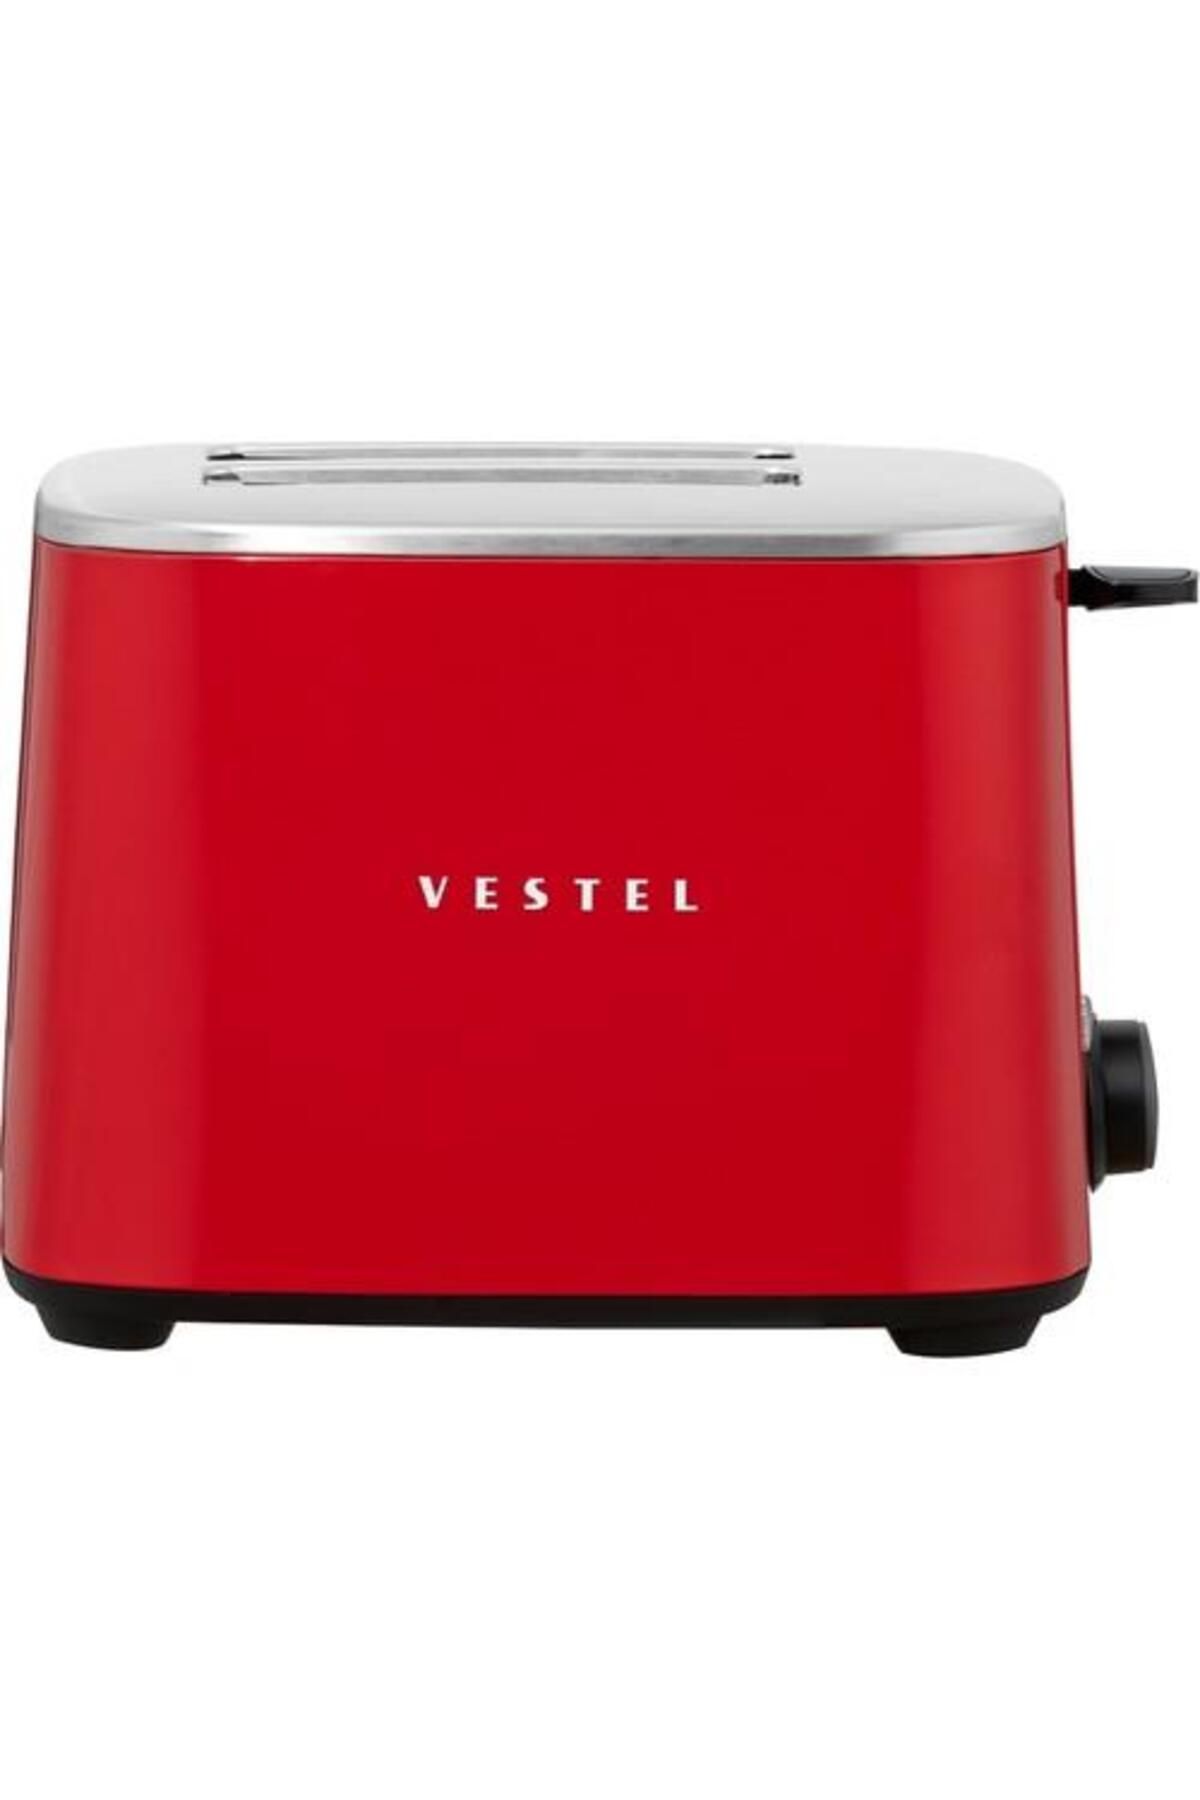 VESTEL Retro Kırmızı 2 Dilim Ekmek Kızartma Makinesi